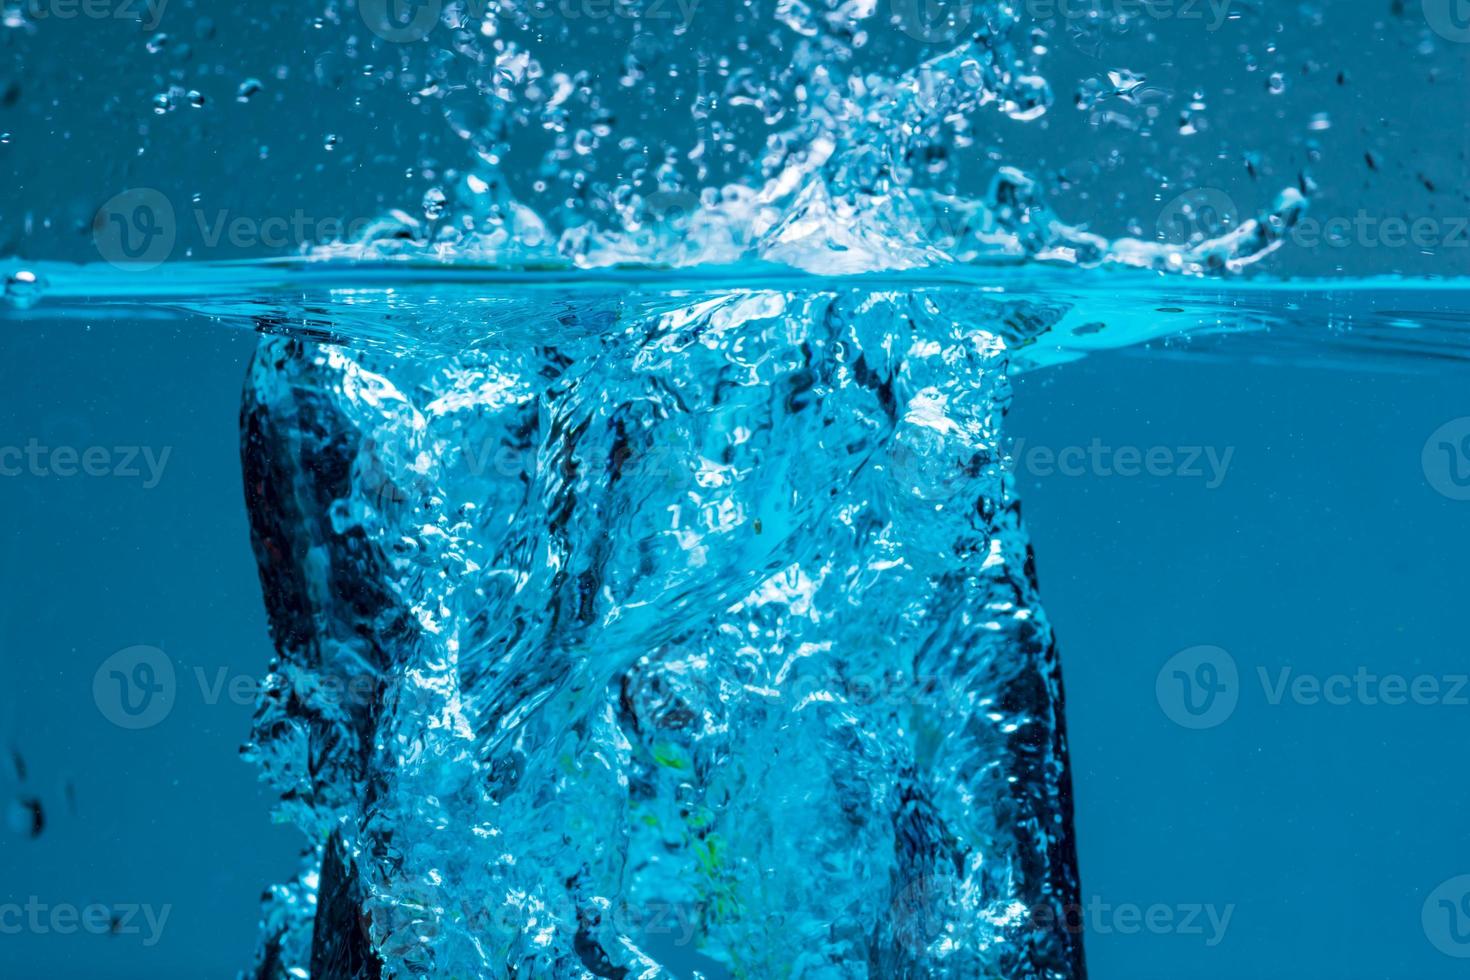 superficie de agua azul sobre fondo blanco foto